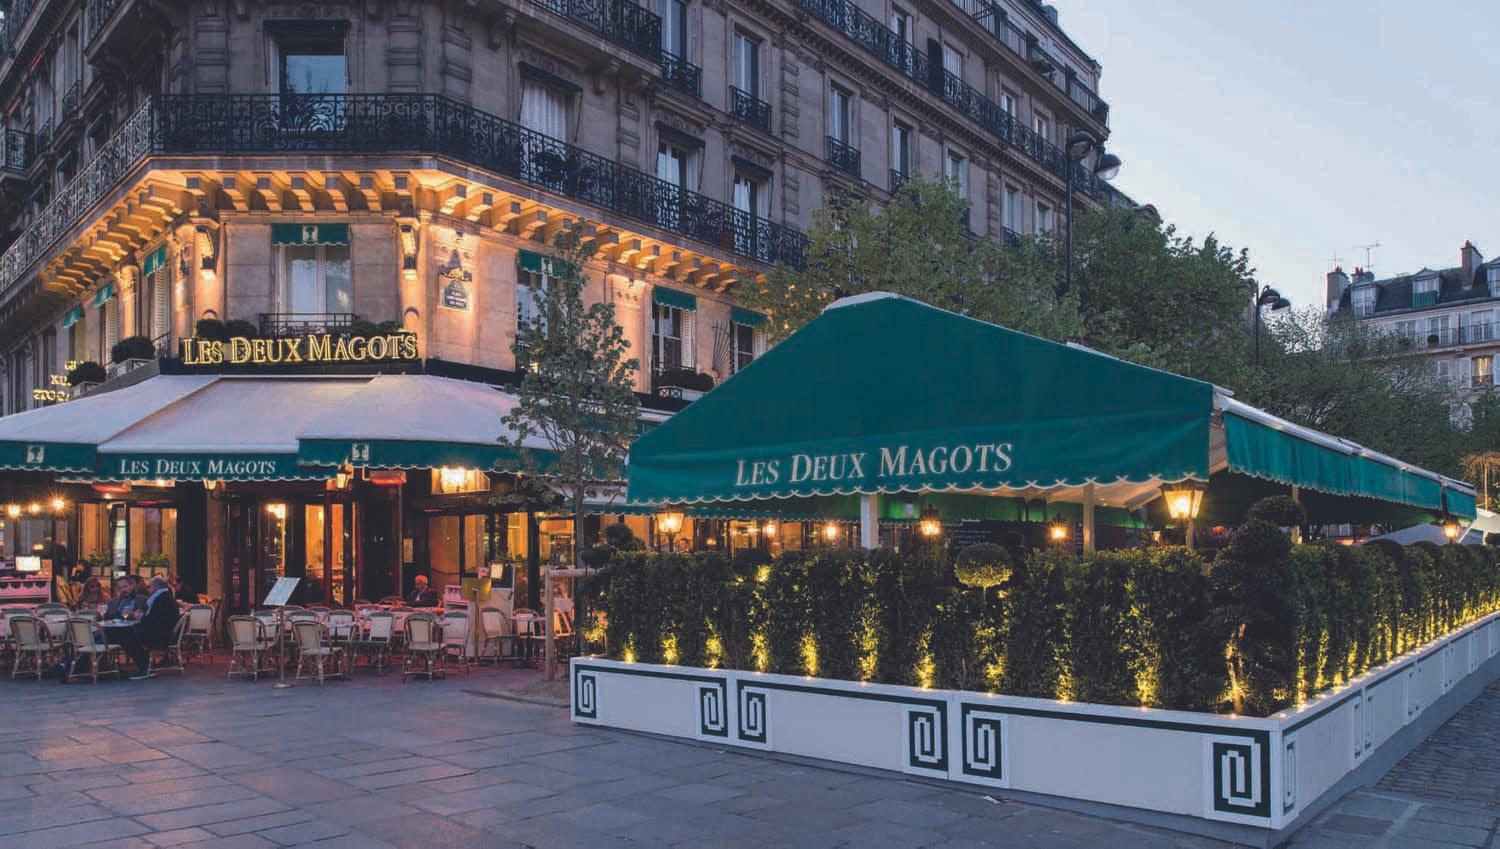 La version 2016 du jardin-terrasse "Les Deux Magots" a gagné en confort et harmonie